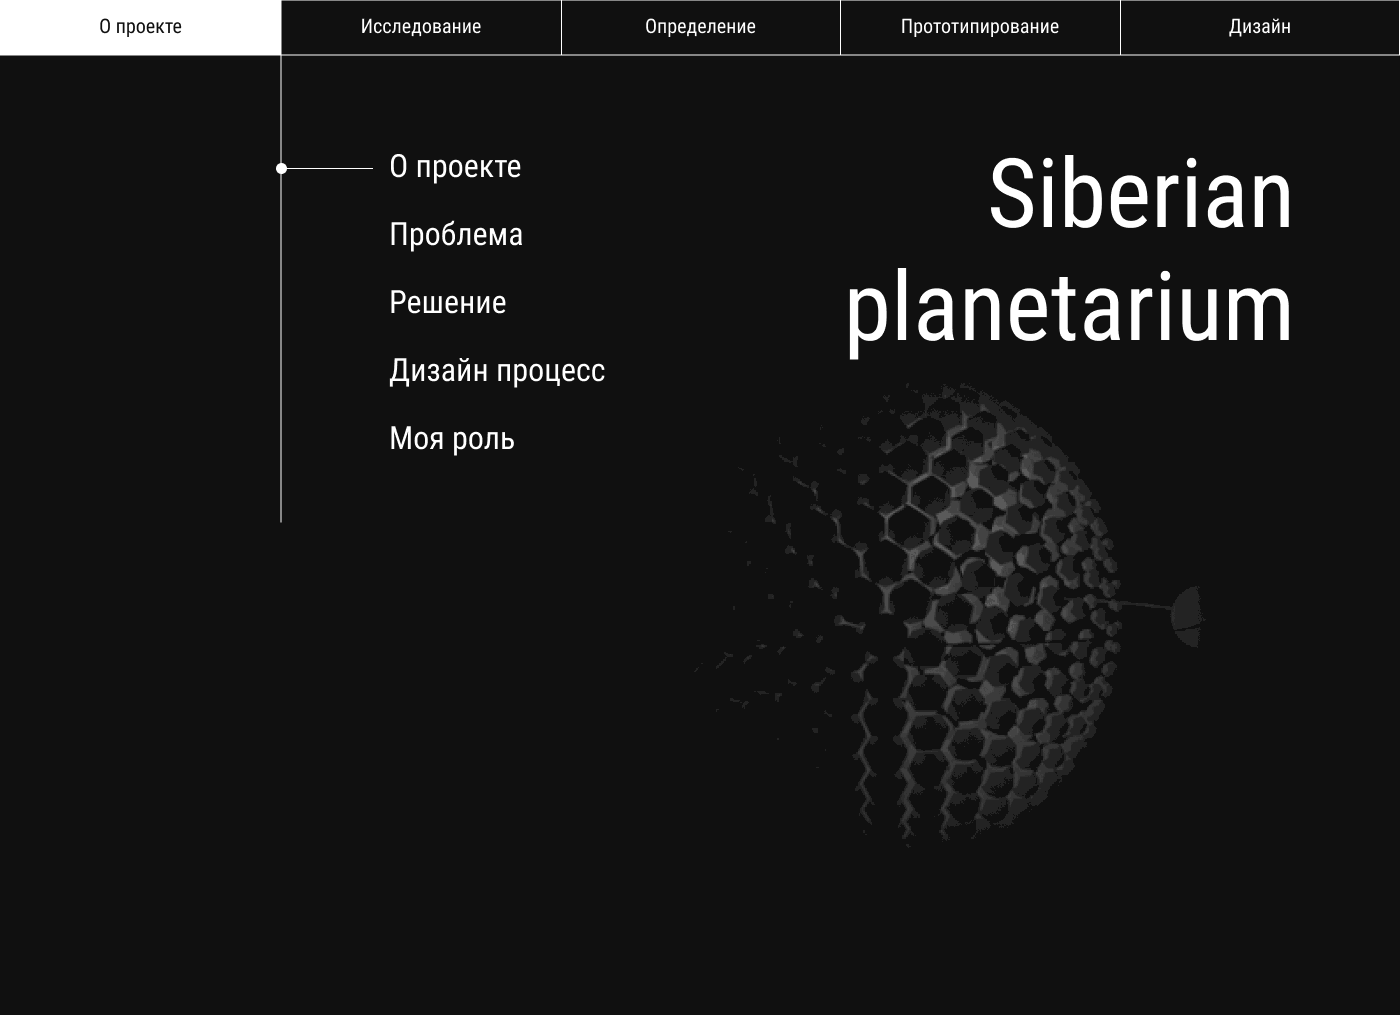 planetarium redesign redesign website UX Research ux redesign siberian redesign concept redesign reseach ux planet UX UI Redesign